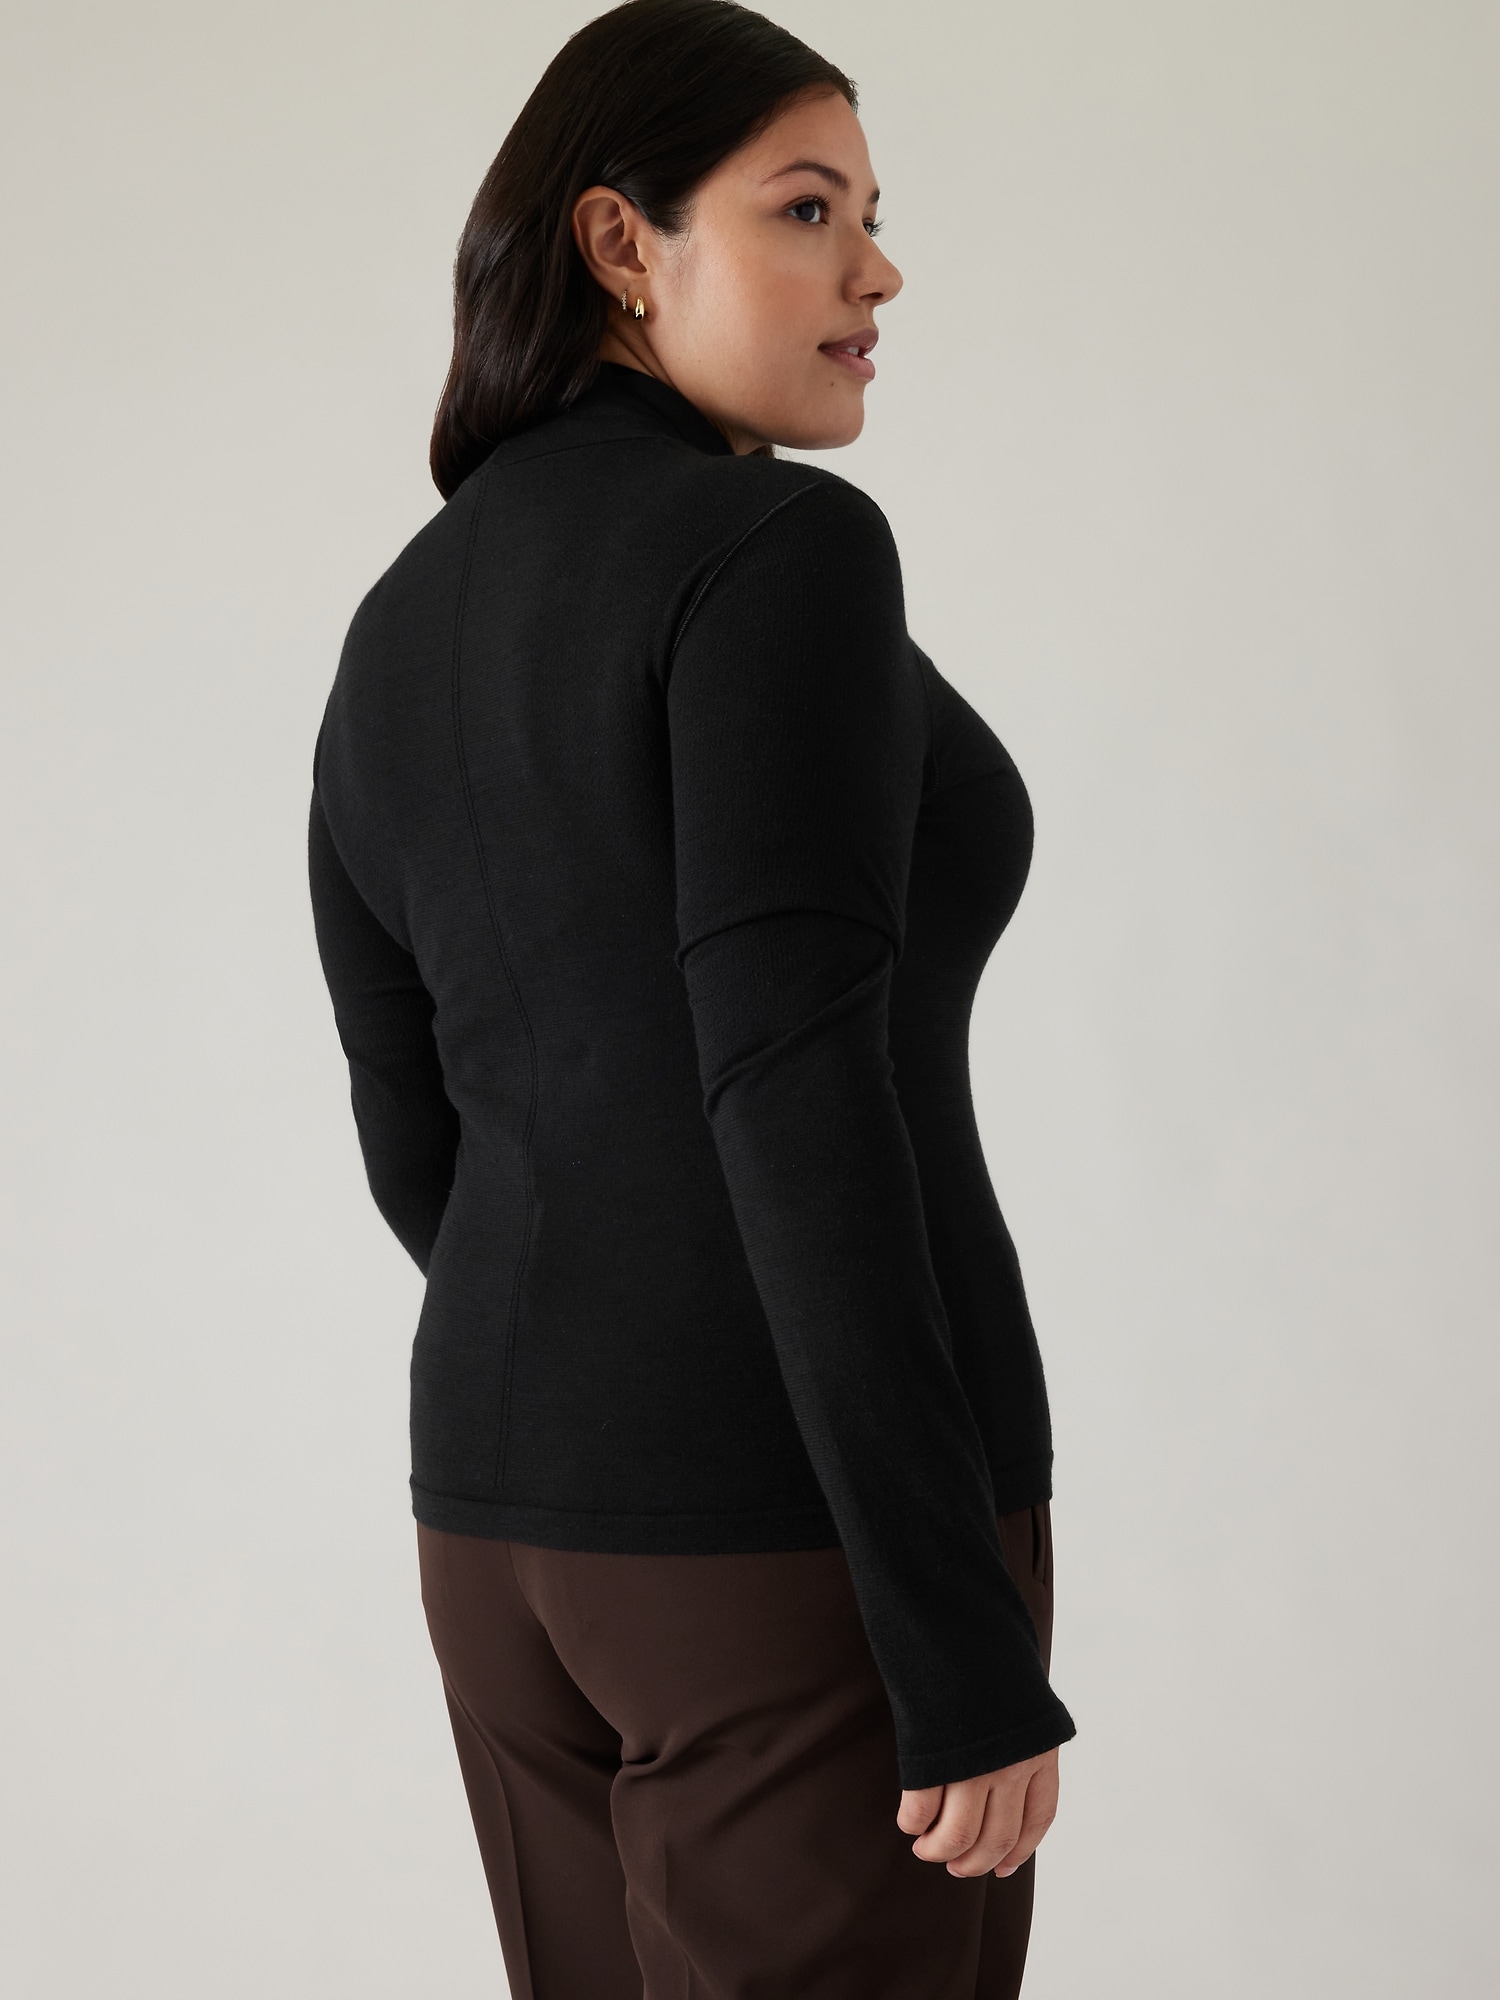 Black Mesh Zip Up Mock Turtleneck Activewear Jacket Tangerine Women's MEDIUM